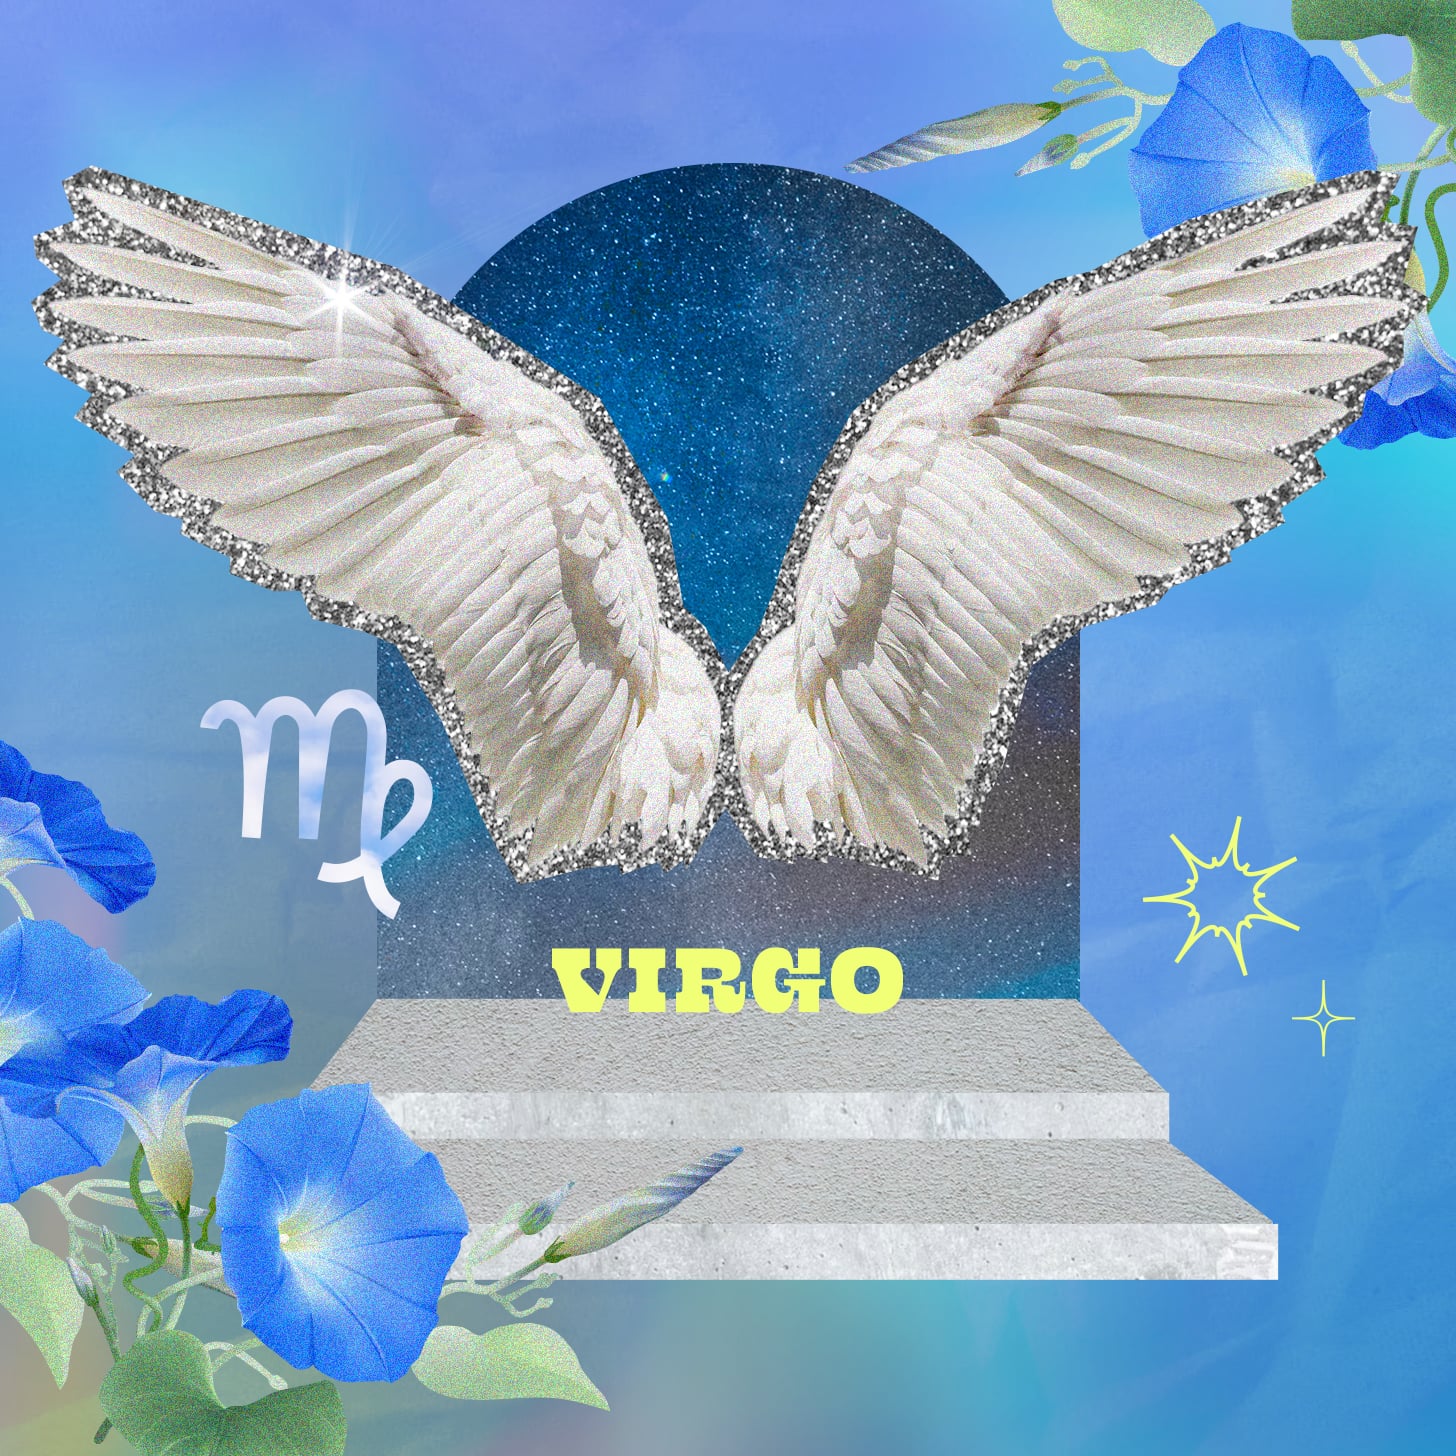 Virgo weekly horoscope for November 6, 2022